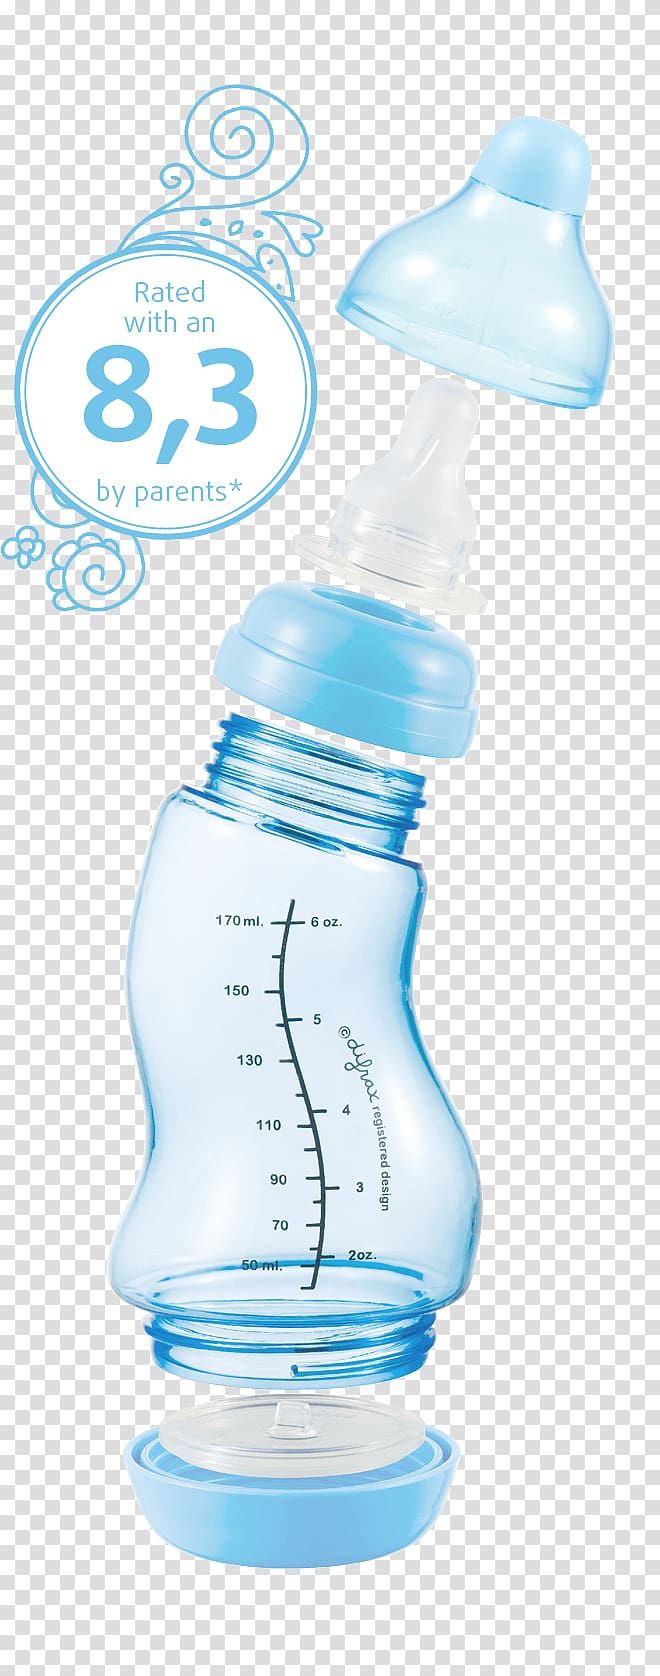 Baby Bottles Plastic bottle Water Bottles Infant, baby bottle transparent background PNG clipart